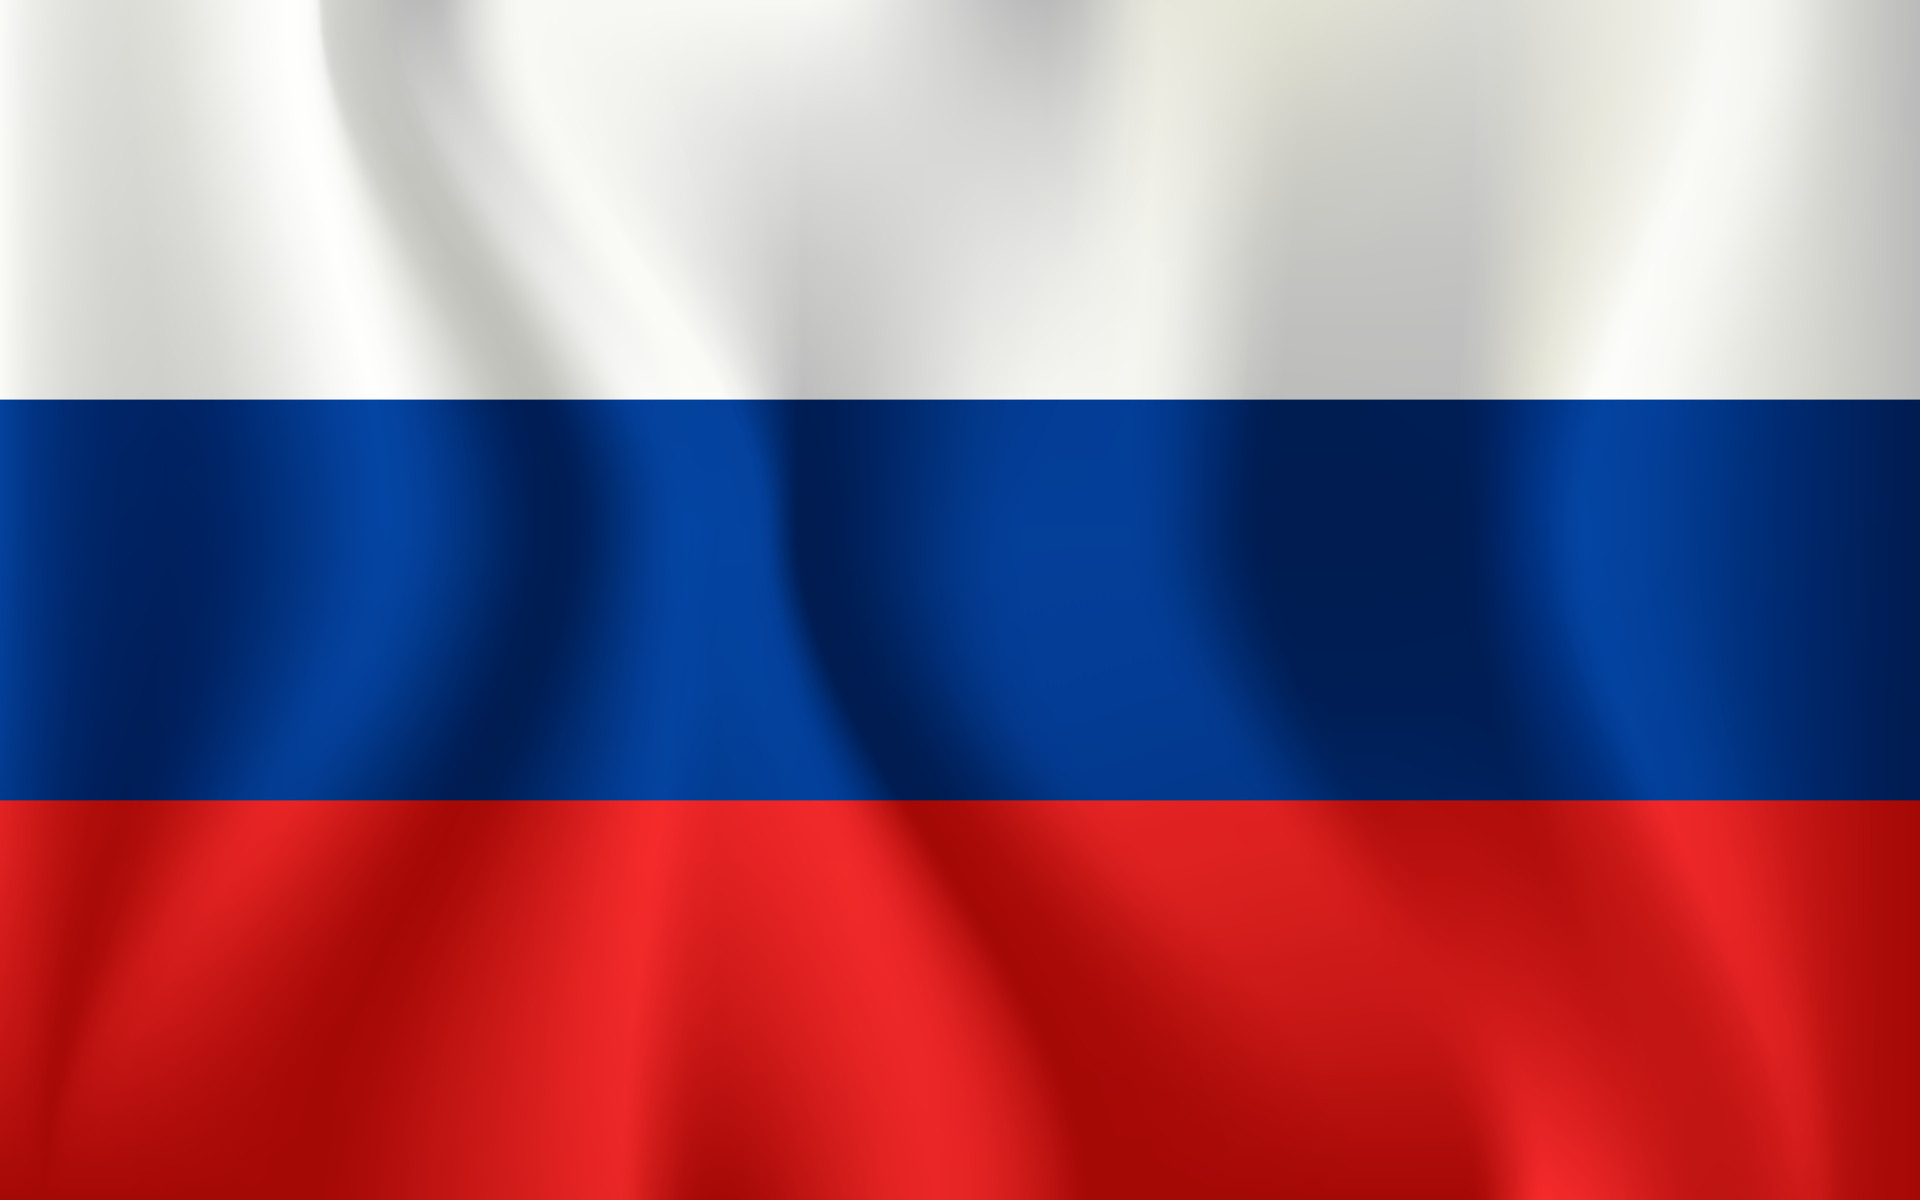 bandeira da rússia. bandeira nacional realista da federação russa. 7934795  Vetor no Vecteezy